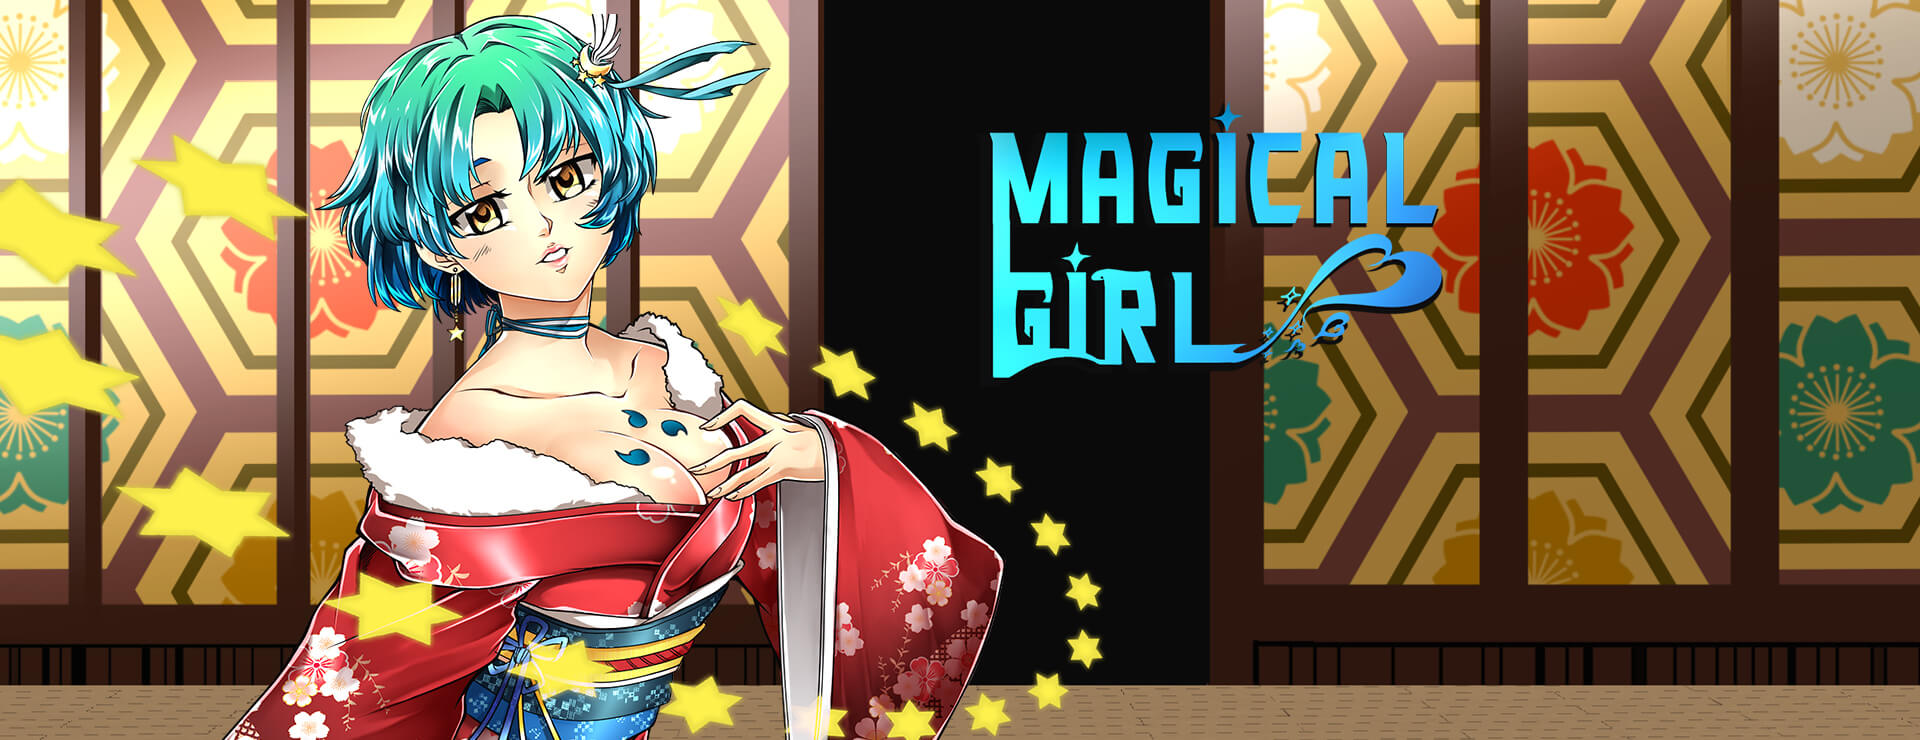 Magical Girl - Casual Juego